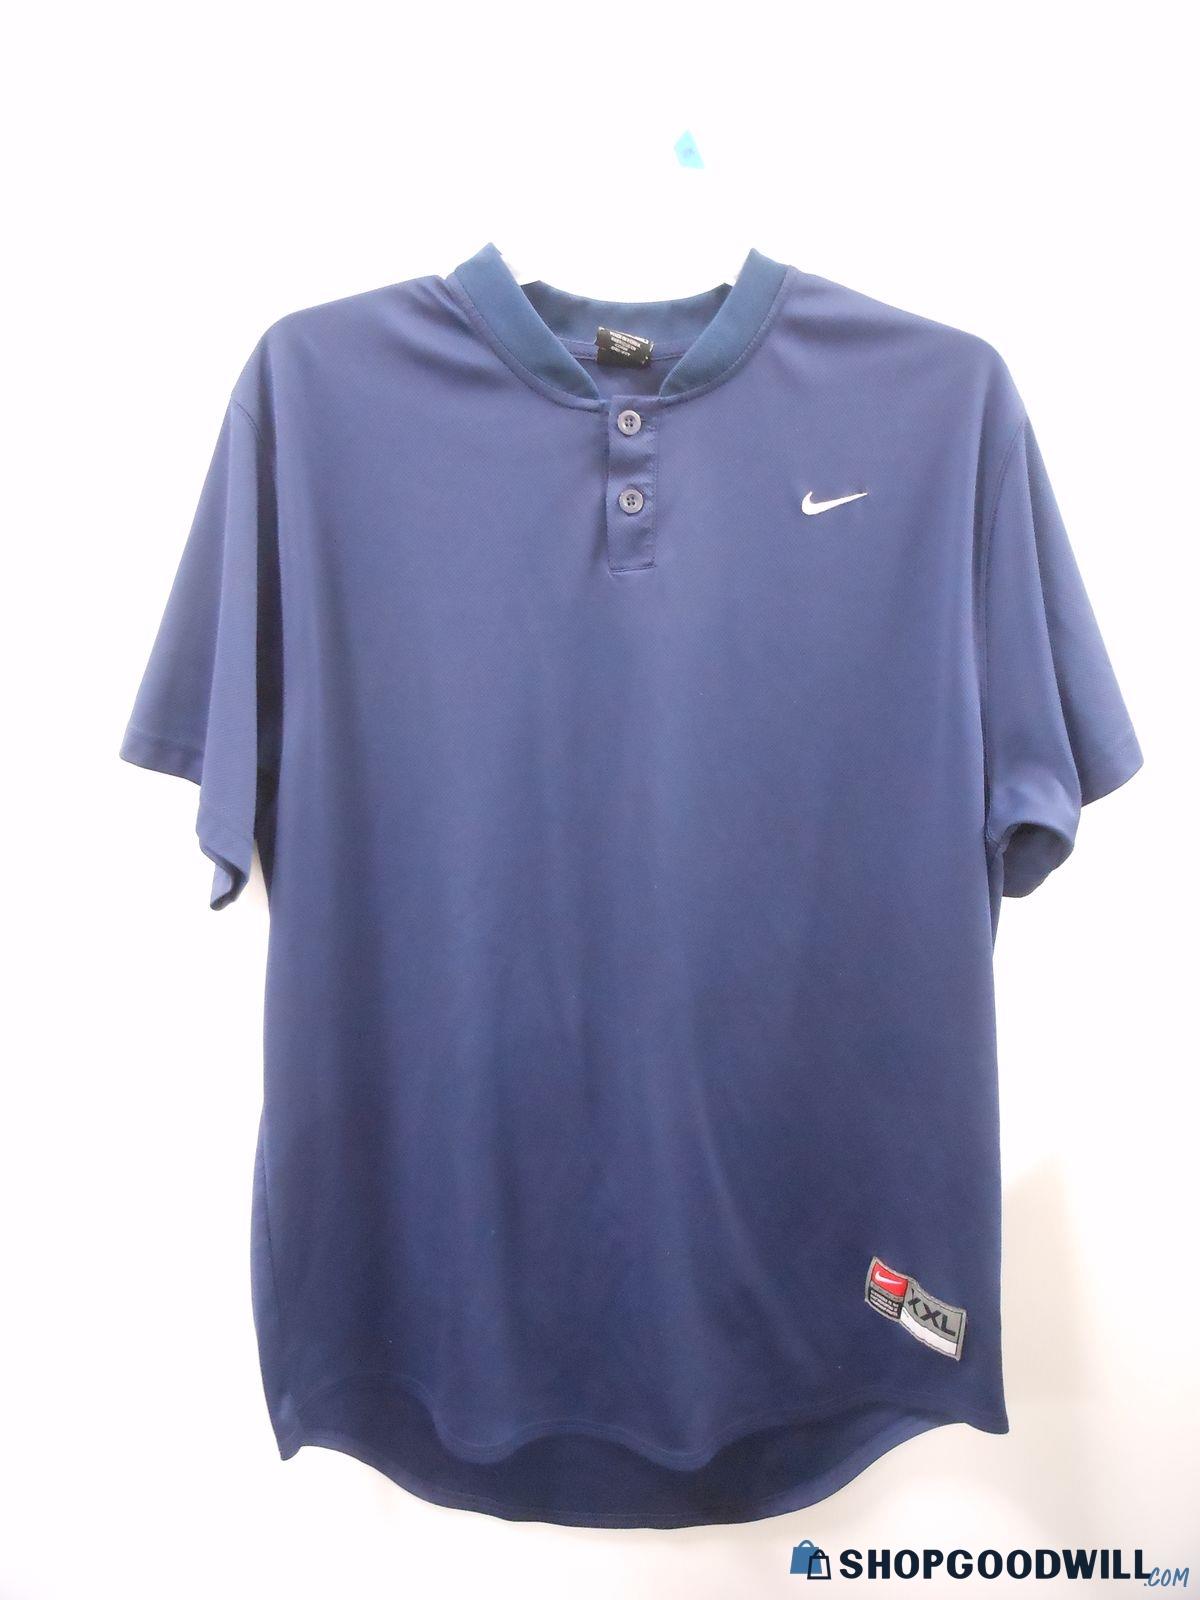 Nike Blue 2-Button Short Sleeve Shirt Adult XXL EUC - shopgoodwill.com